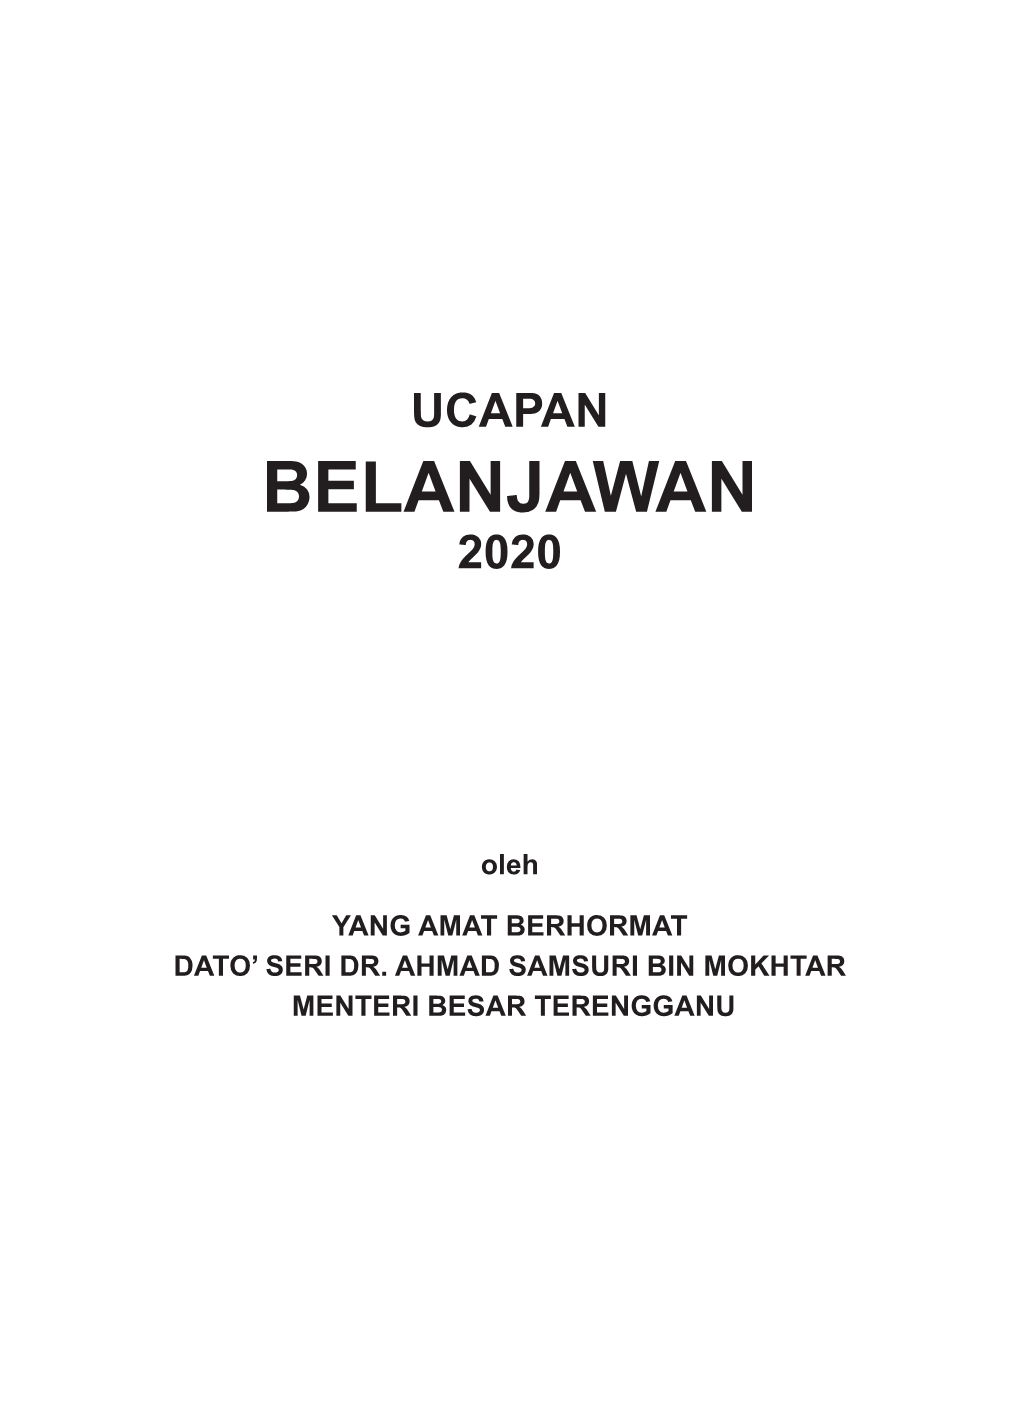 Ucapan Belanjawan Terengganu 2020